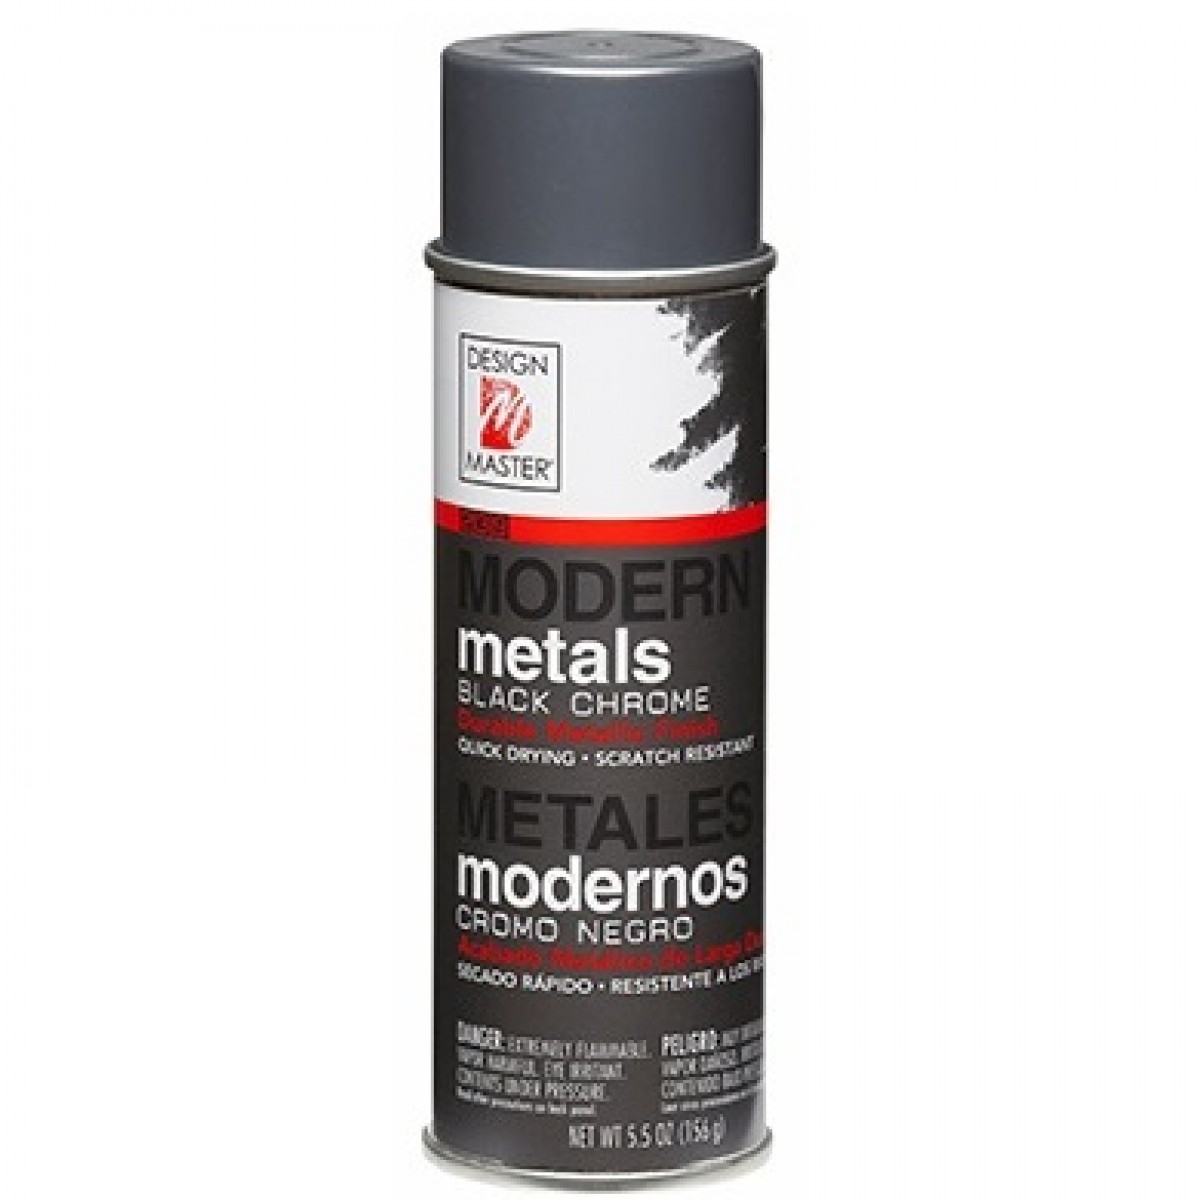 239 Black Crome 155gms DM Metallic Colour Spray Paint - 1 No